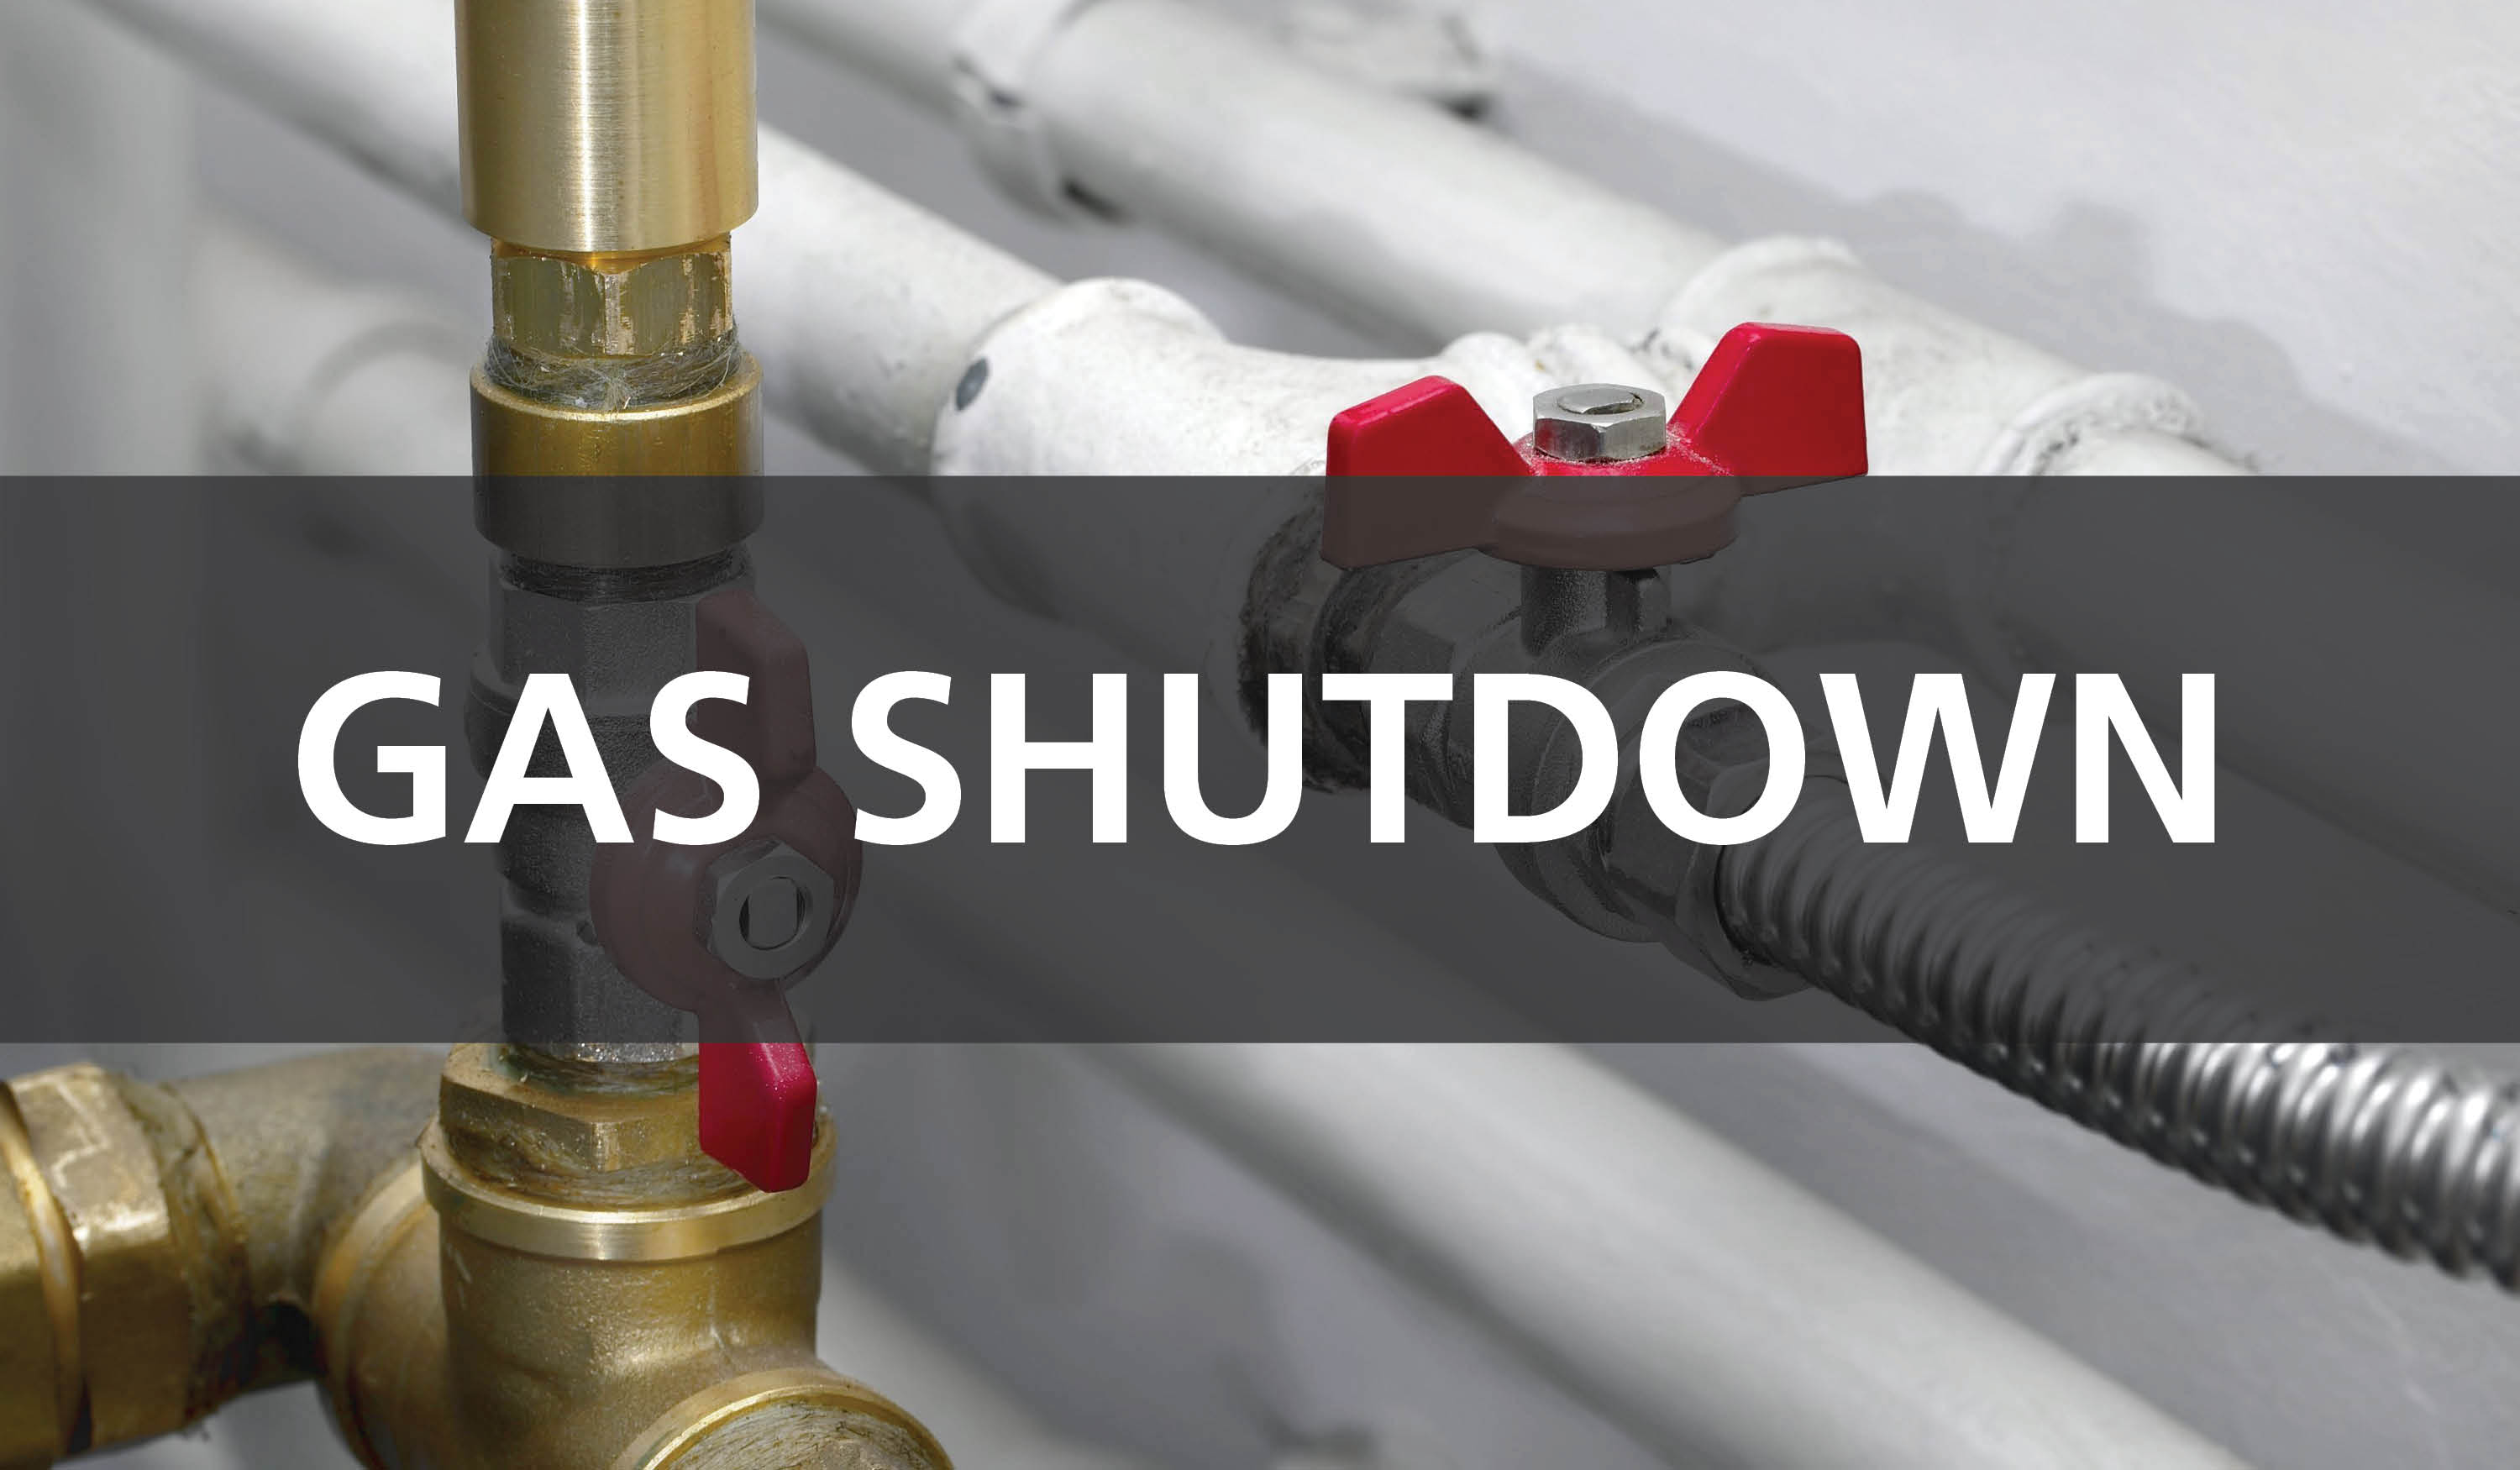 Gas shutdown